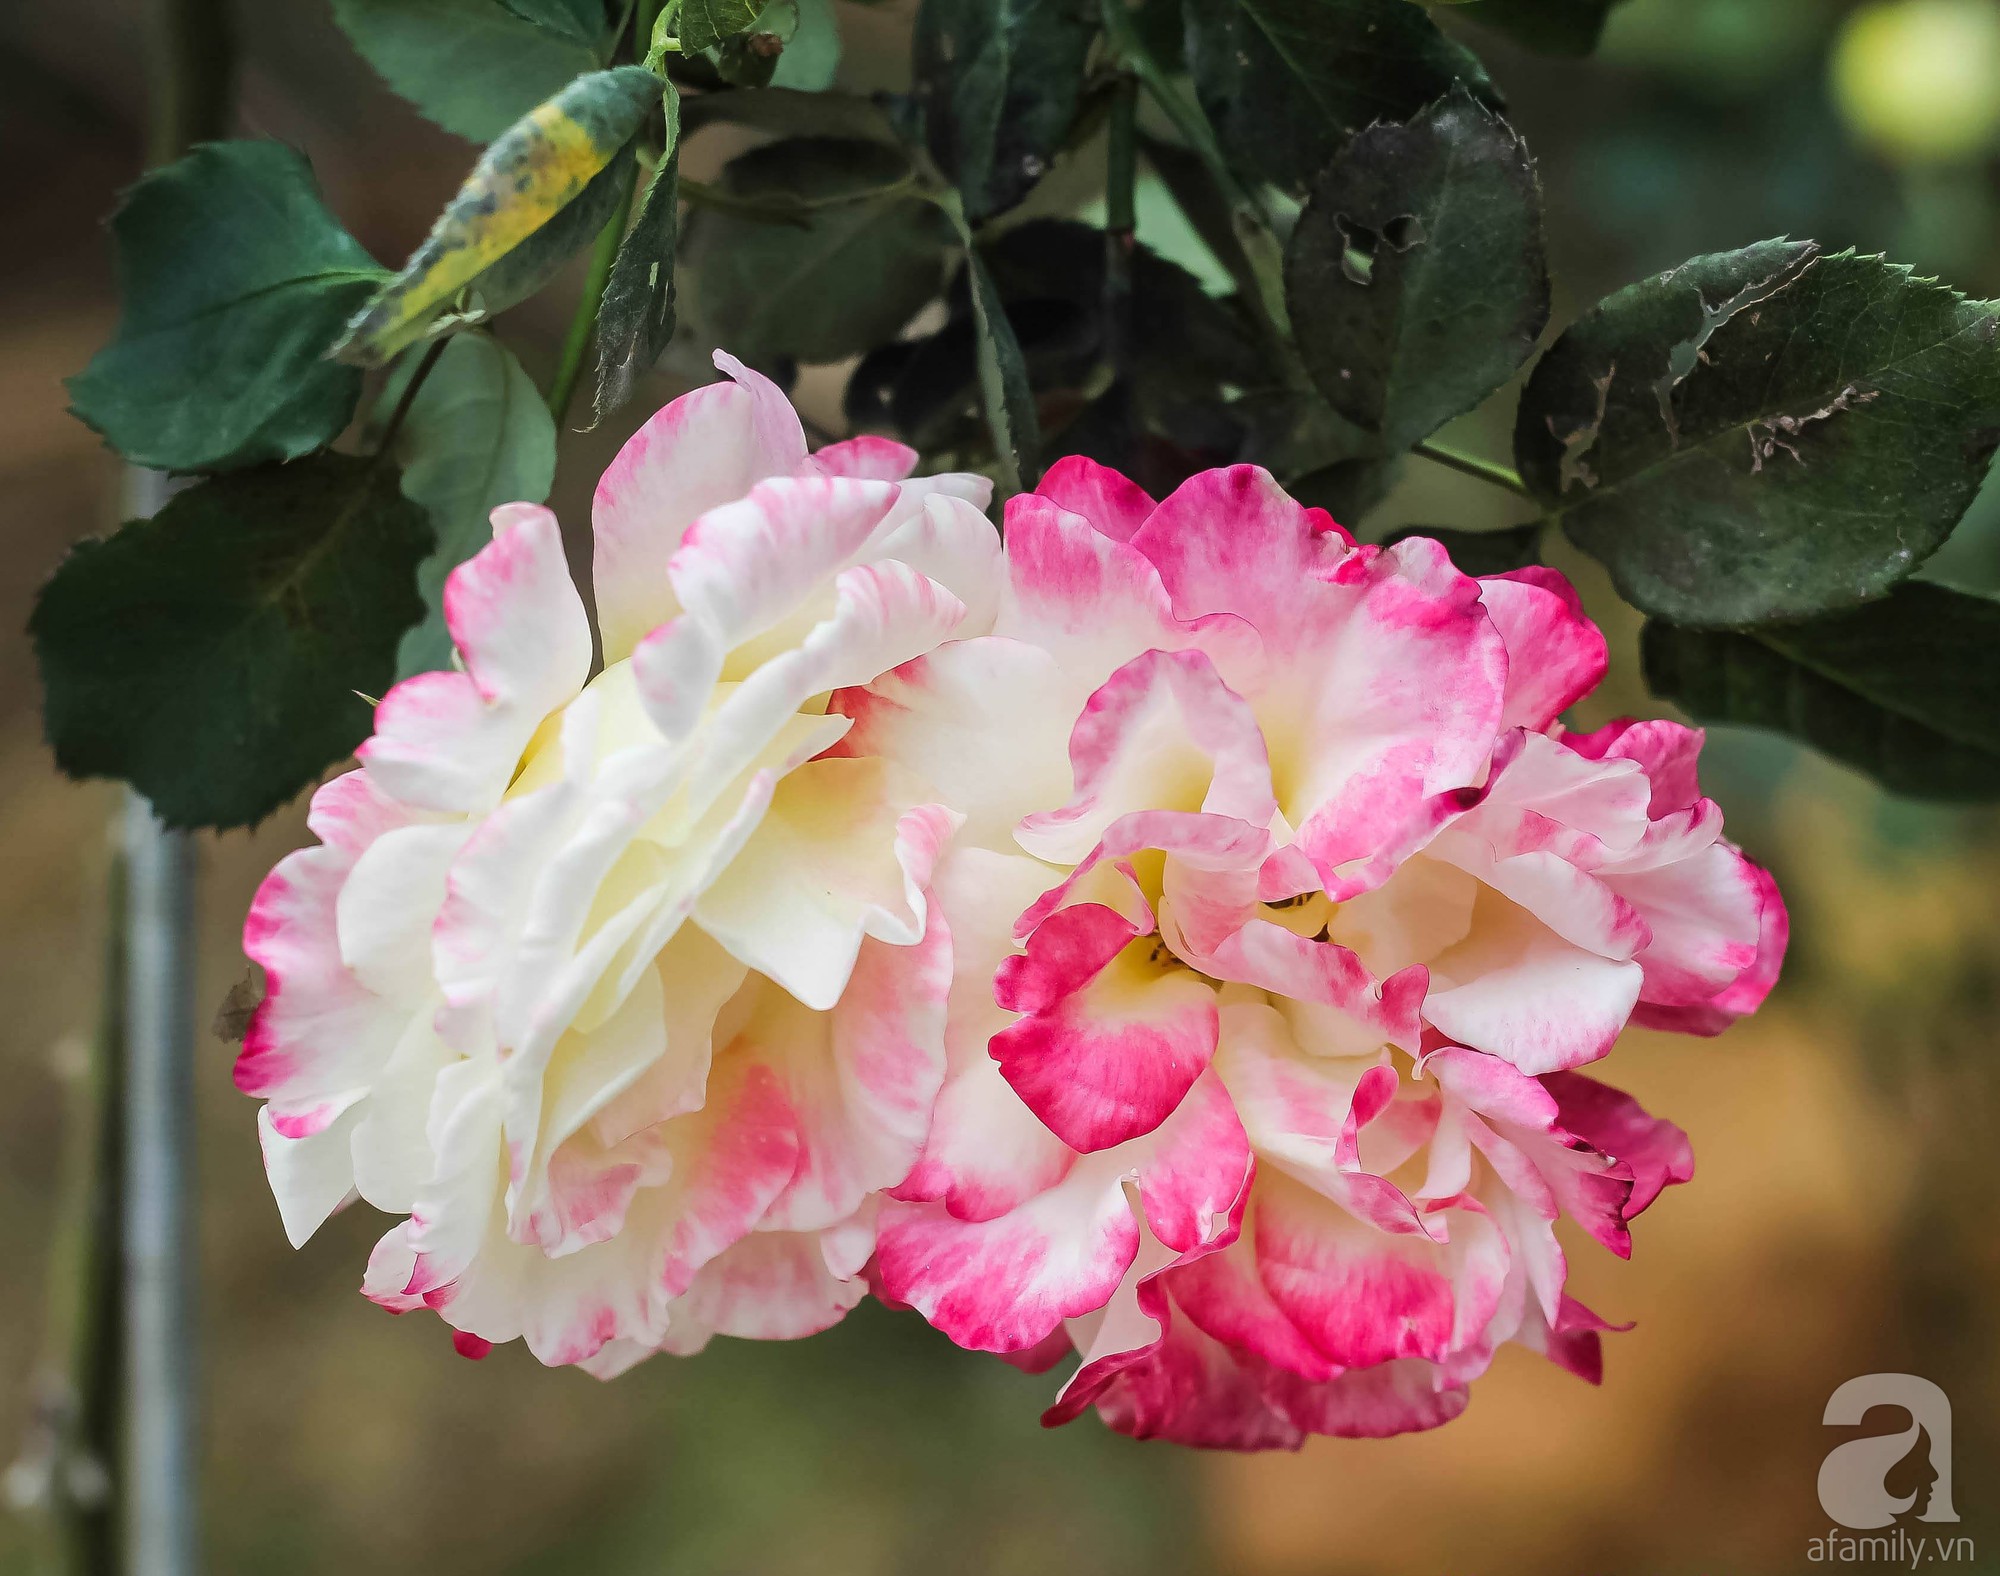 Khu vườn 600m² đẹp lãng mạn và rực rỡ hoa hồng của cô giáo dạy Văn ở Đà Lạt - Ảnh 8.